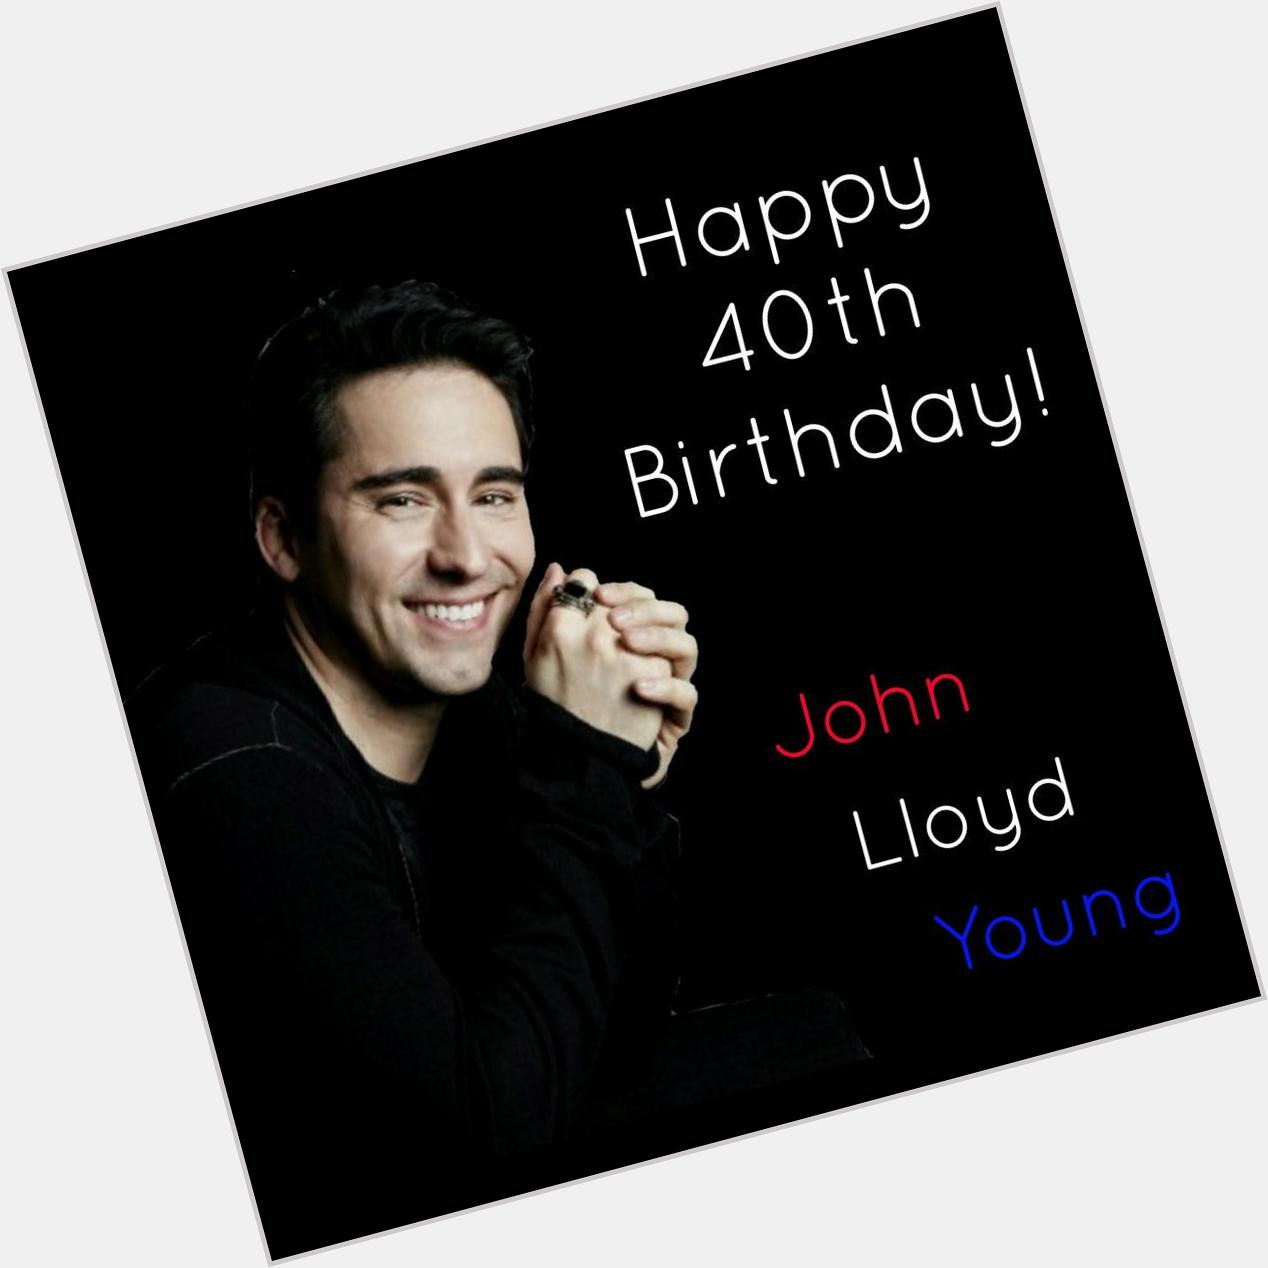 Happy 40th Birthday John Lloyd Young!!! 